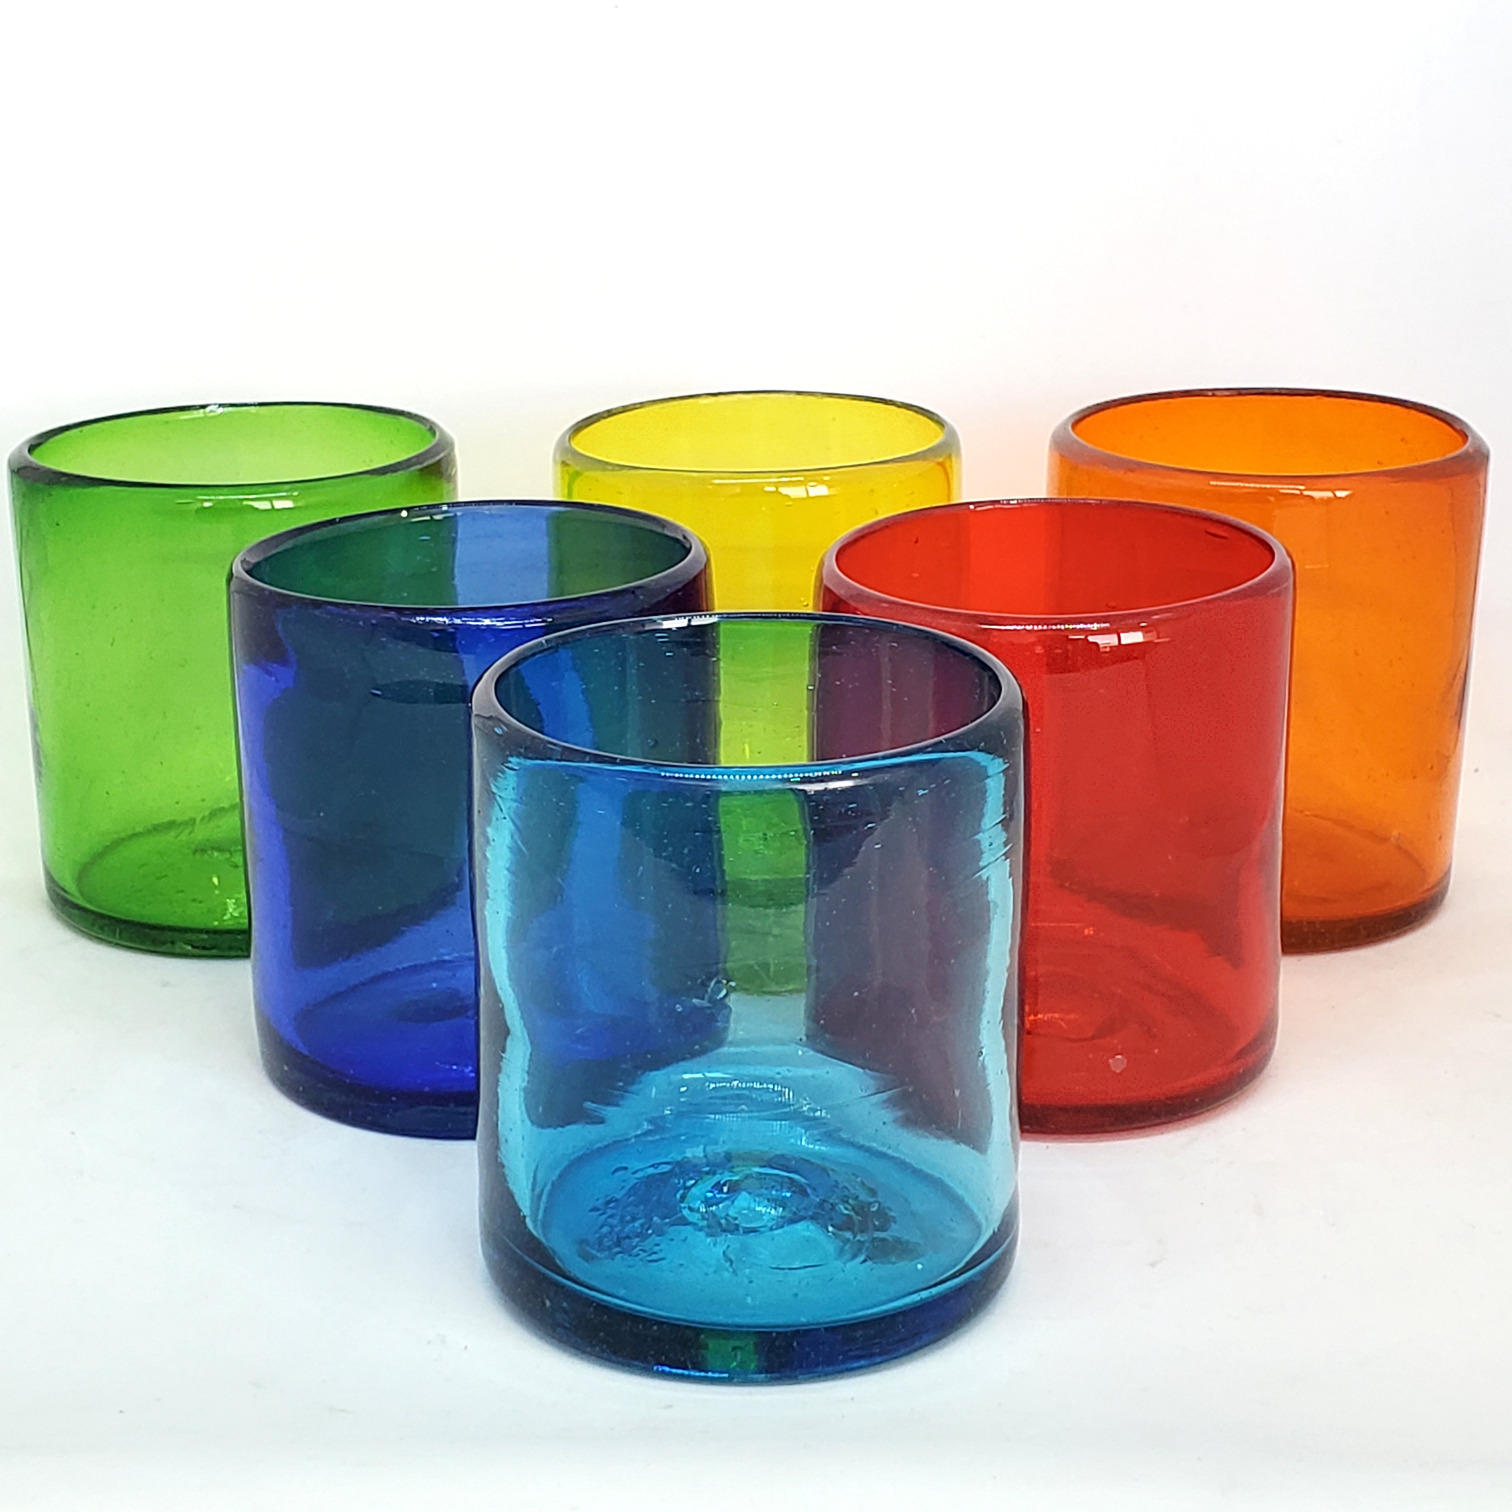 Vasos de Vidrio Soplado / Vasos chicos 9 oz Arcoiris (set de 6) / Éstos artesanales vasos le darán un toque colorido a su bebida favorita.